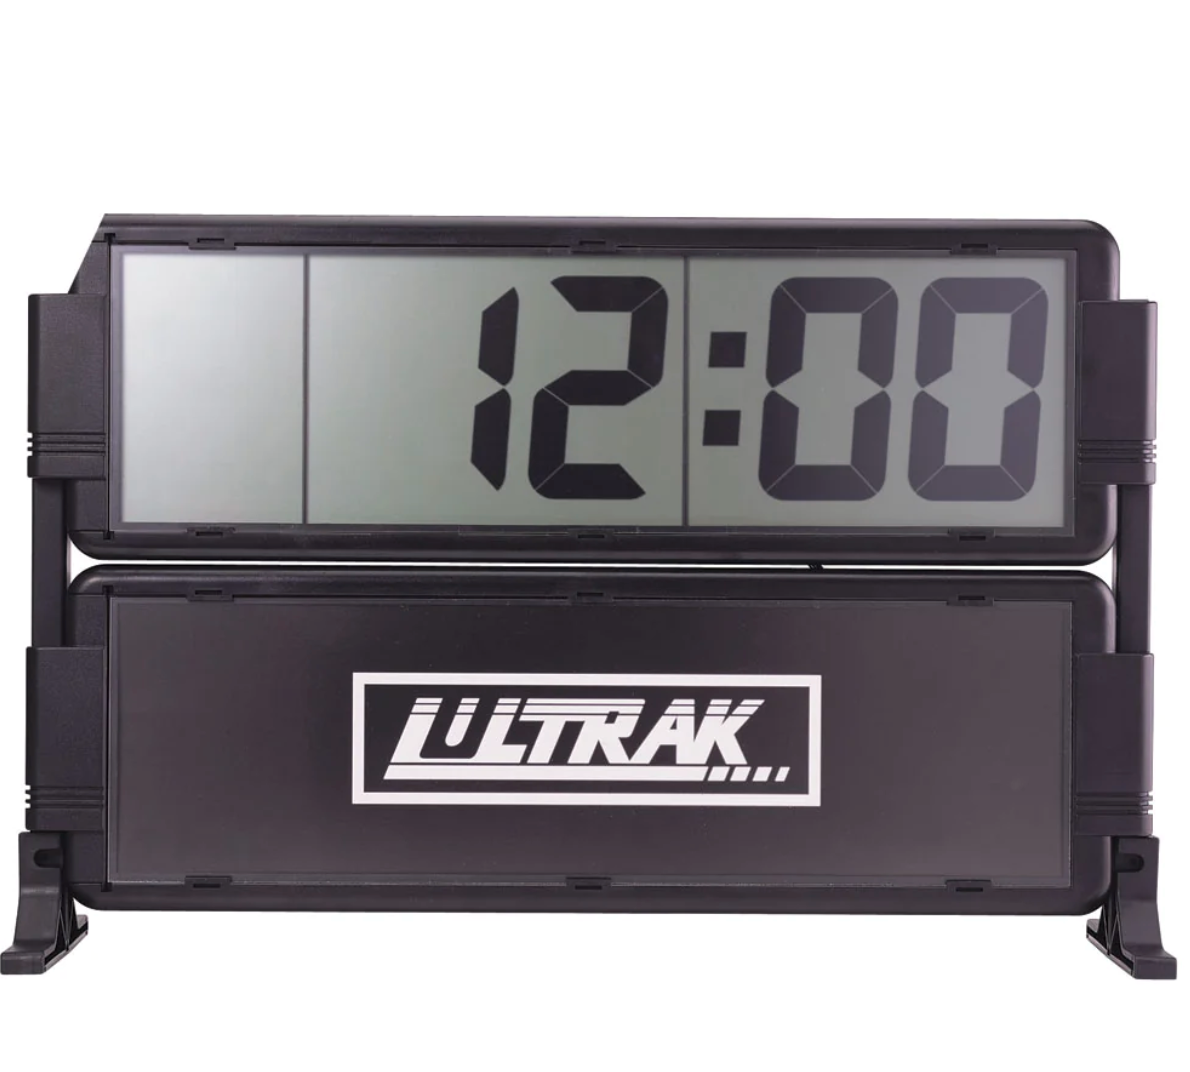 (#TSWT100) Ultrak T-100 Display/Race Clock